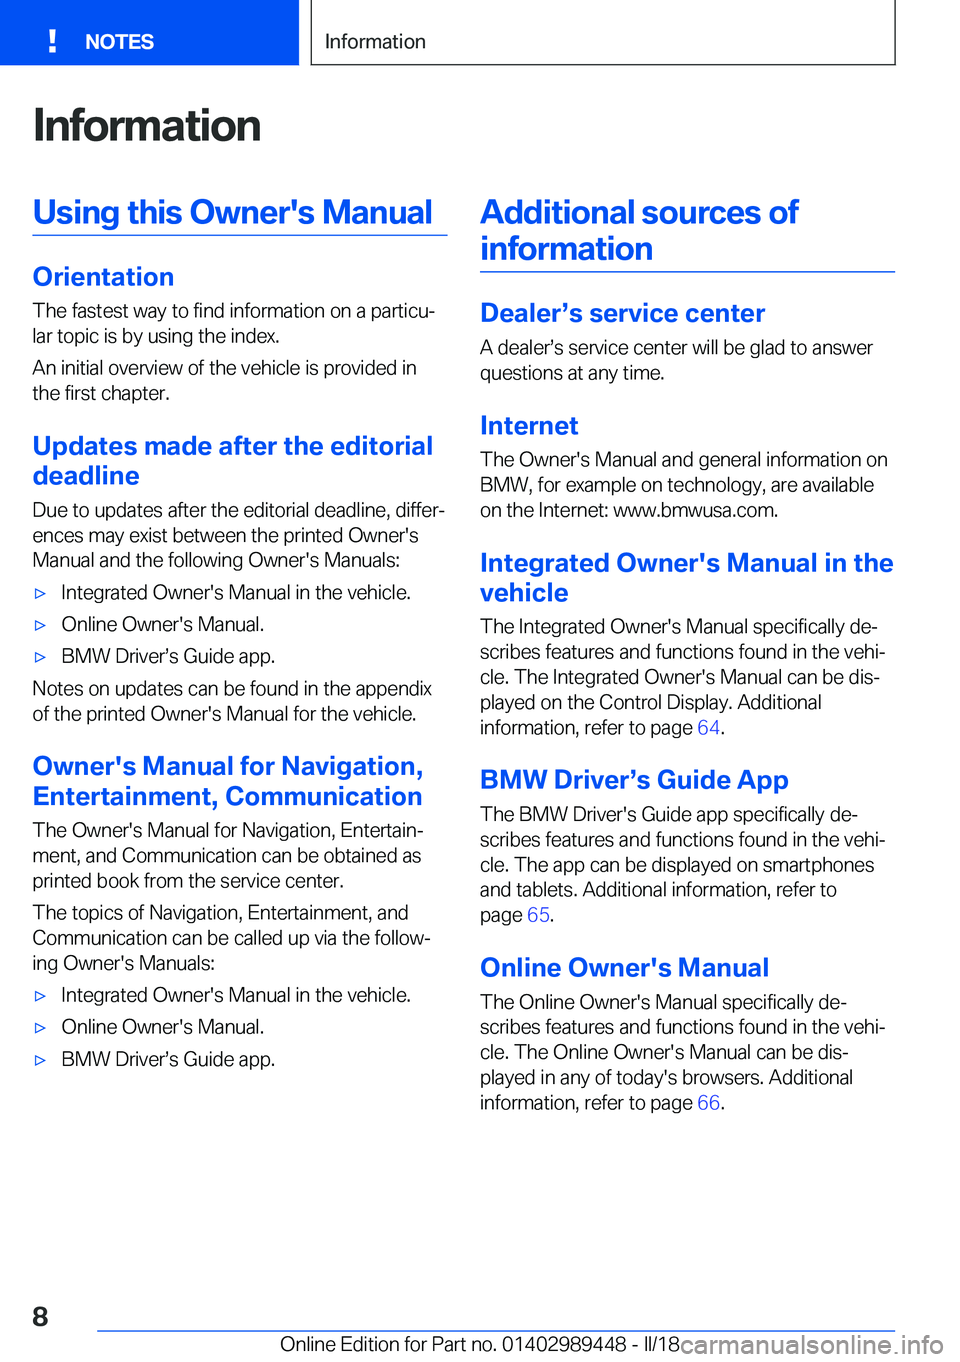 BMW X2 2018  Owners Manual �I�n�f�o�r�m�a�t�i�o�n�U�s�i�n�g��t�h�i�s��O�w�n�e�r�'�s��M�a�n�u�a�l
�O�r�i�e�n�t�a�t�i�o�n�T�h�e� �f�a�s�t�e�s�t� �w�a�y� �t�o� �f�i�n�d� �i�n�f�o�r�m�a�t�i�o�n� �o�n� �a� �p�a�r�t�i�c�uj�l�